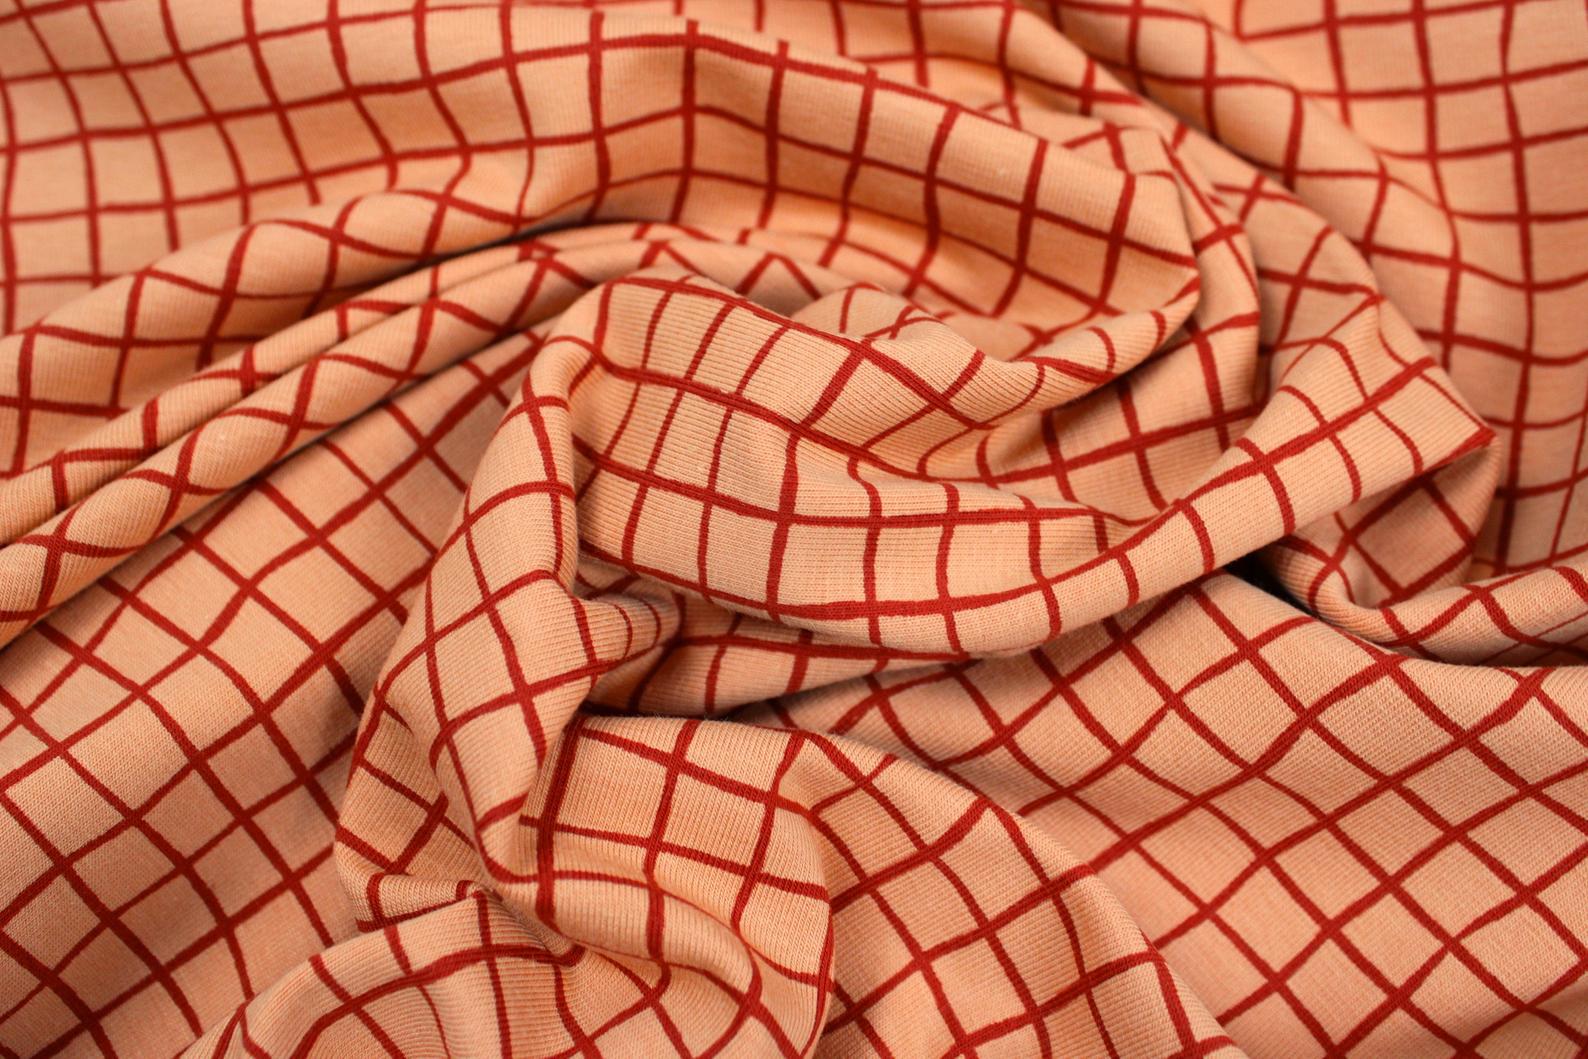  Veronika, Jersey-Baumwolle,  150 cm breit     